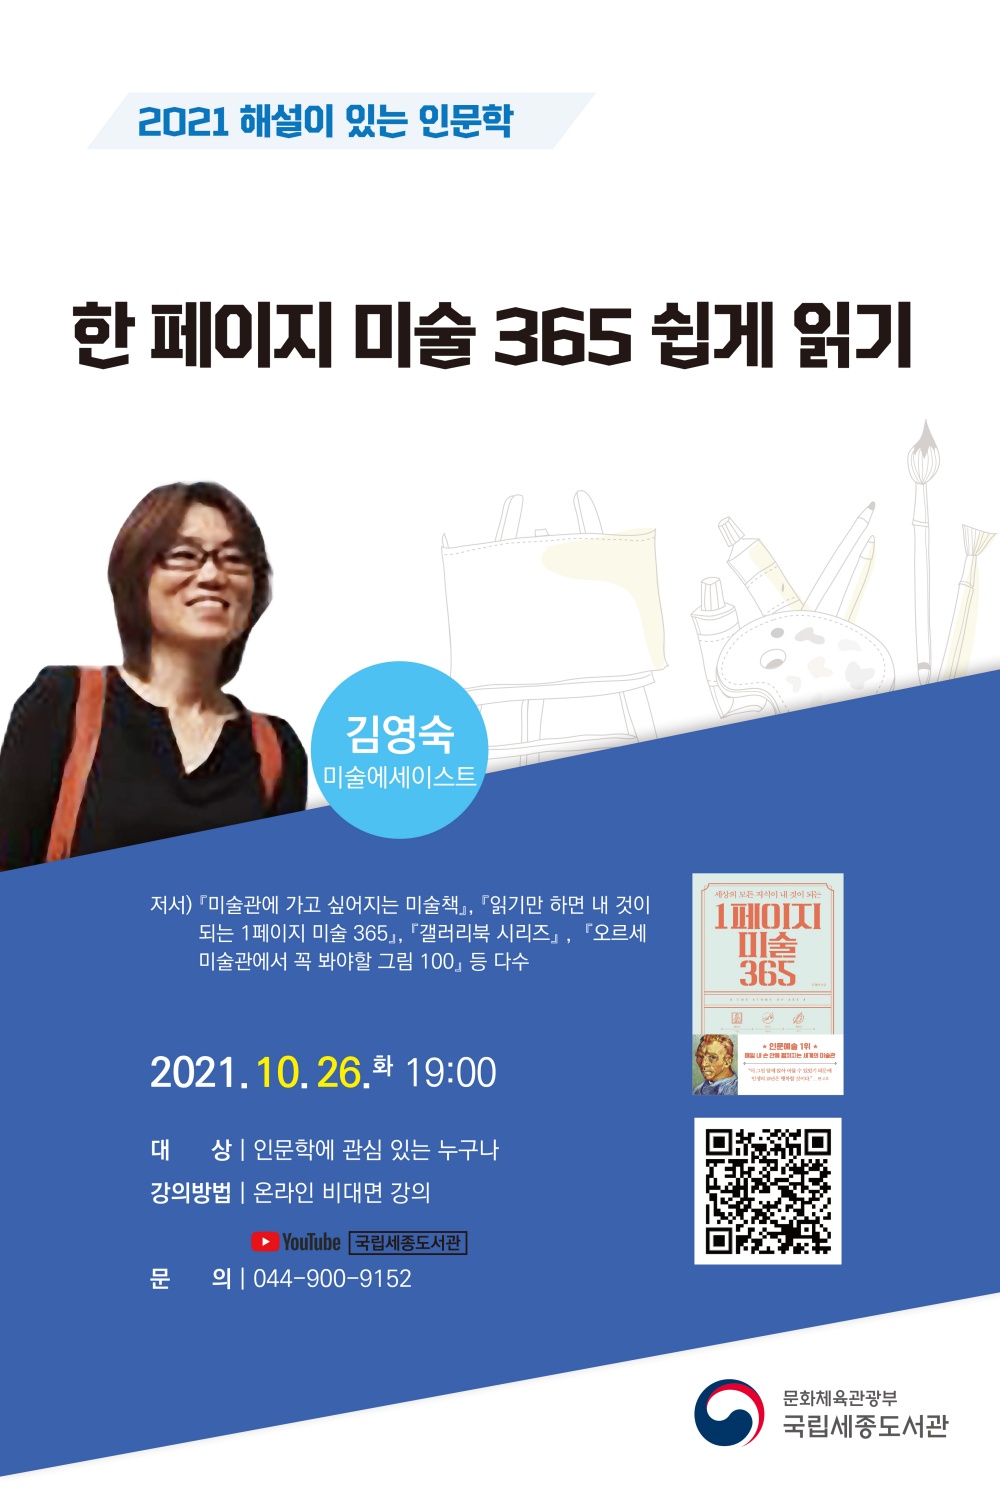 국립세종도서관에서 진행하는 '해설이 있는 인문학' 온라인강연 포스터